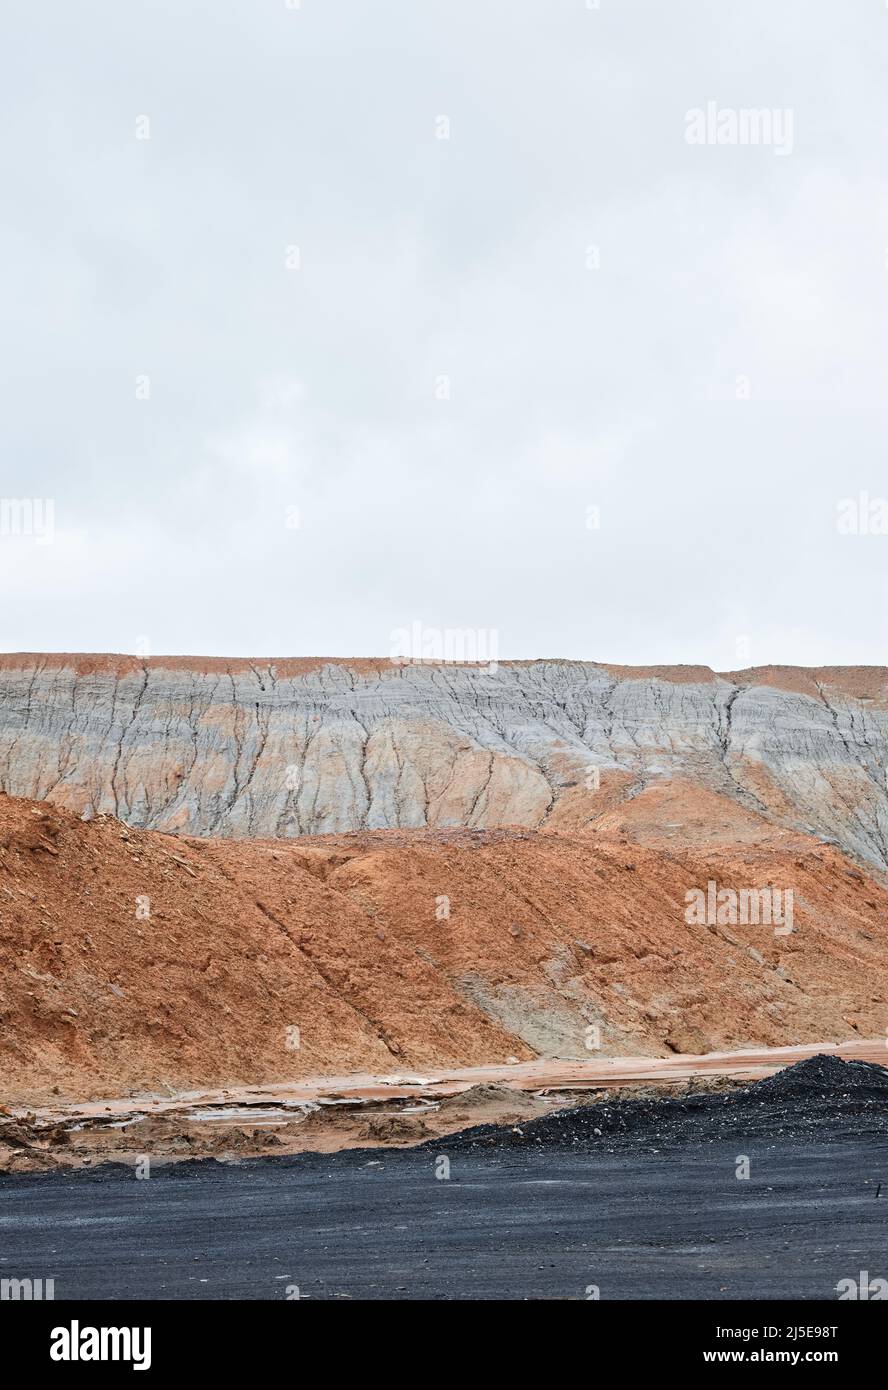 Giftige Abfallland mit verschmutztem Boden von schwarzen und orangefarbenen Farben, ökologisches Katastrophenkonzept Stockfoto